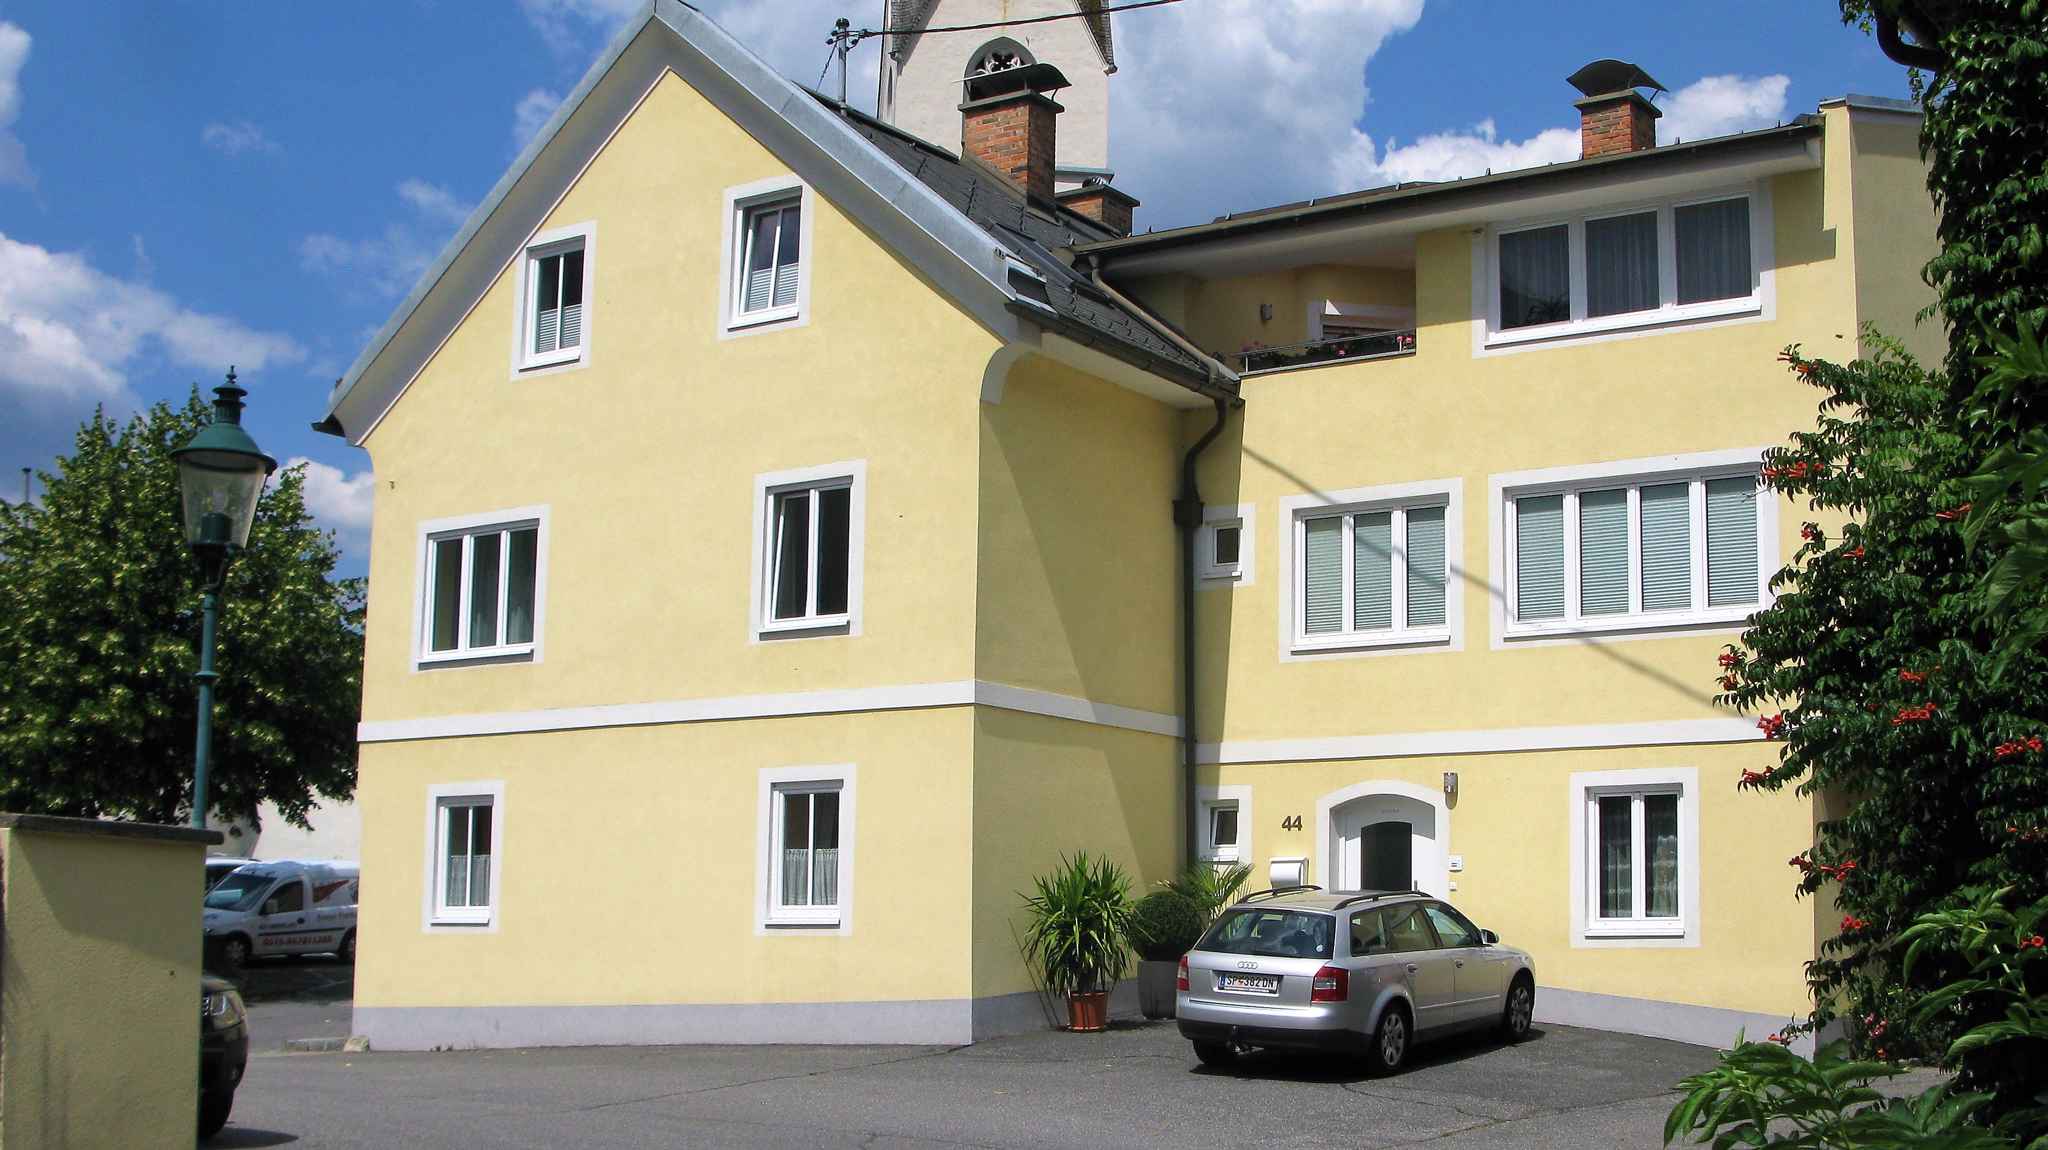 Ferienwohnung im Ortszentrum (480421), Obervellach, , Kärnten, Österreich, Bild 2